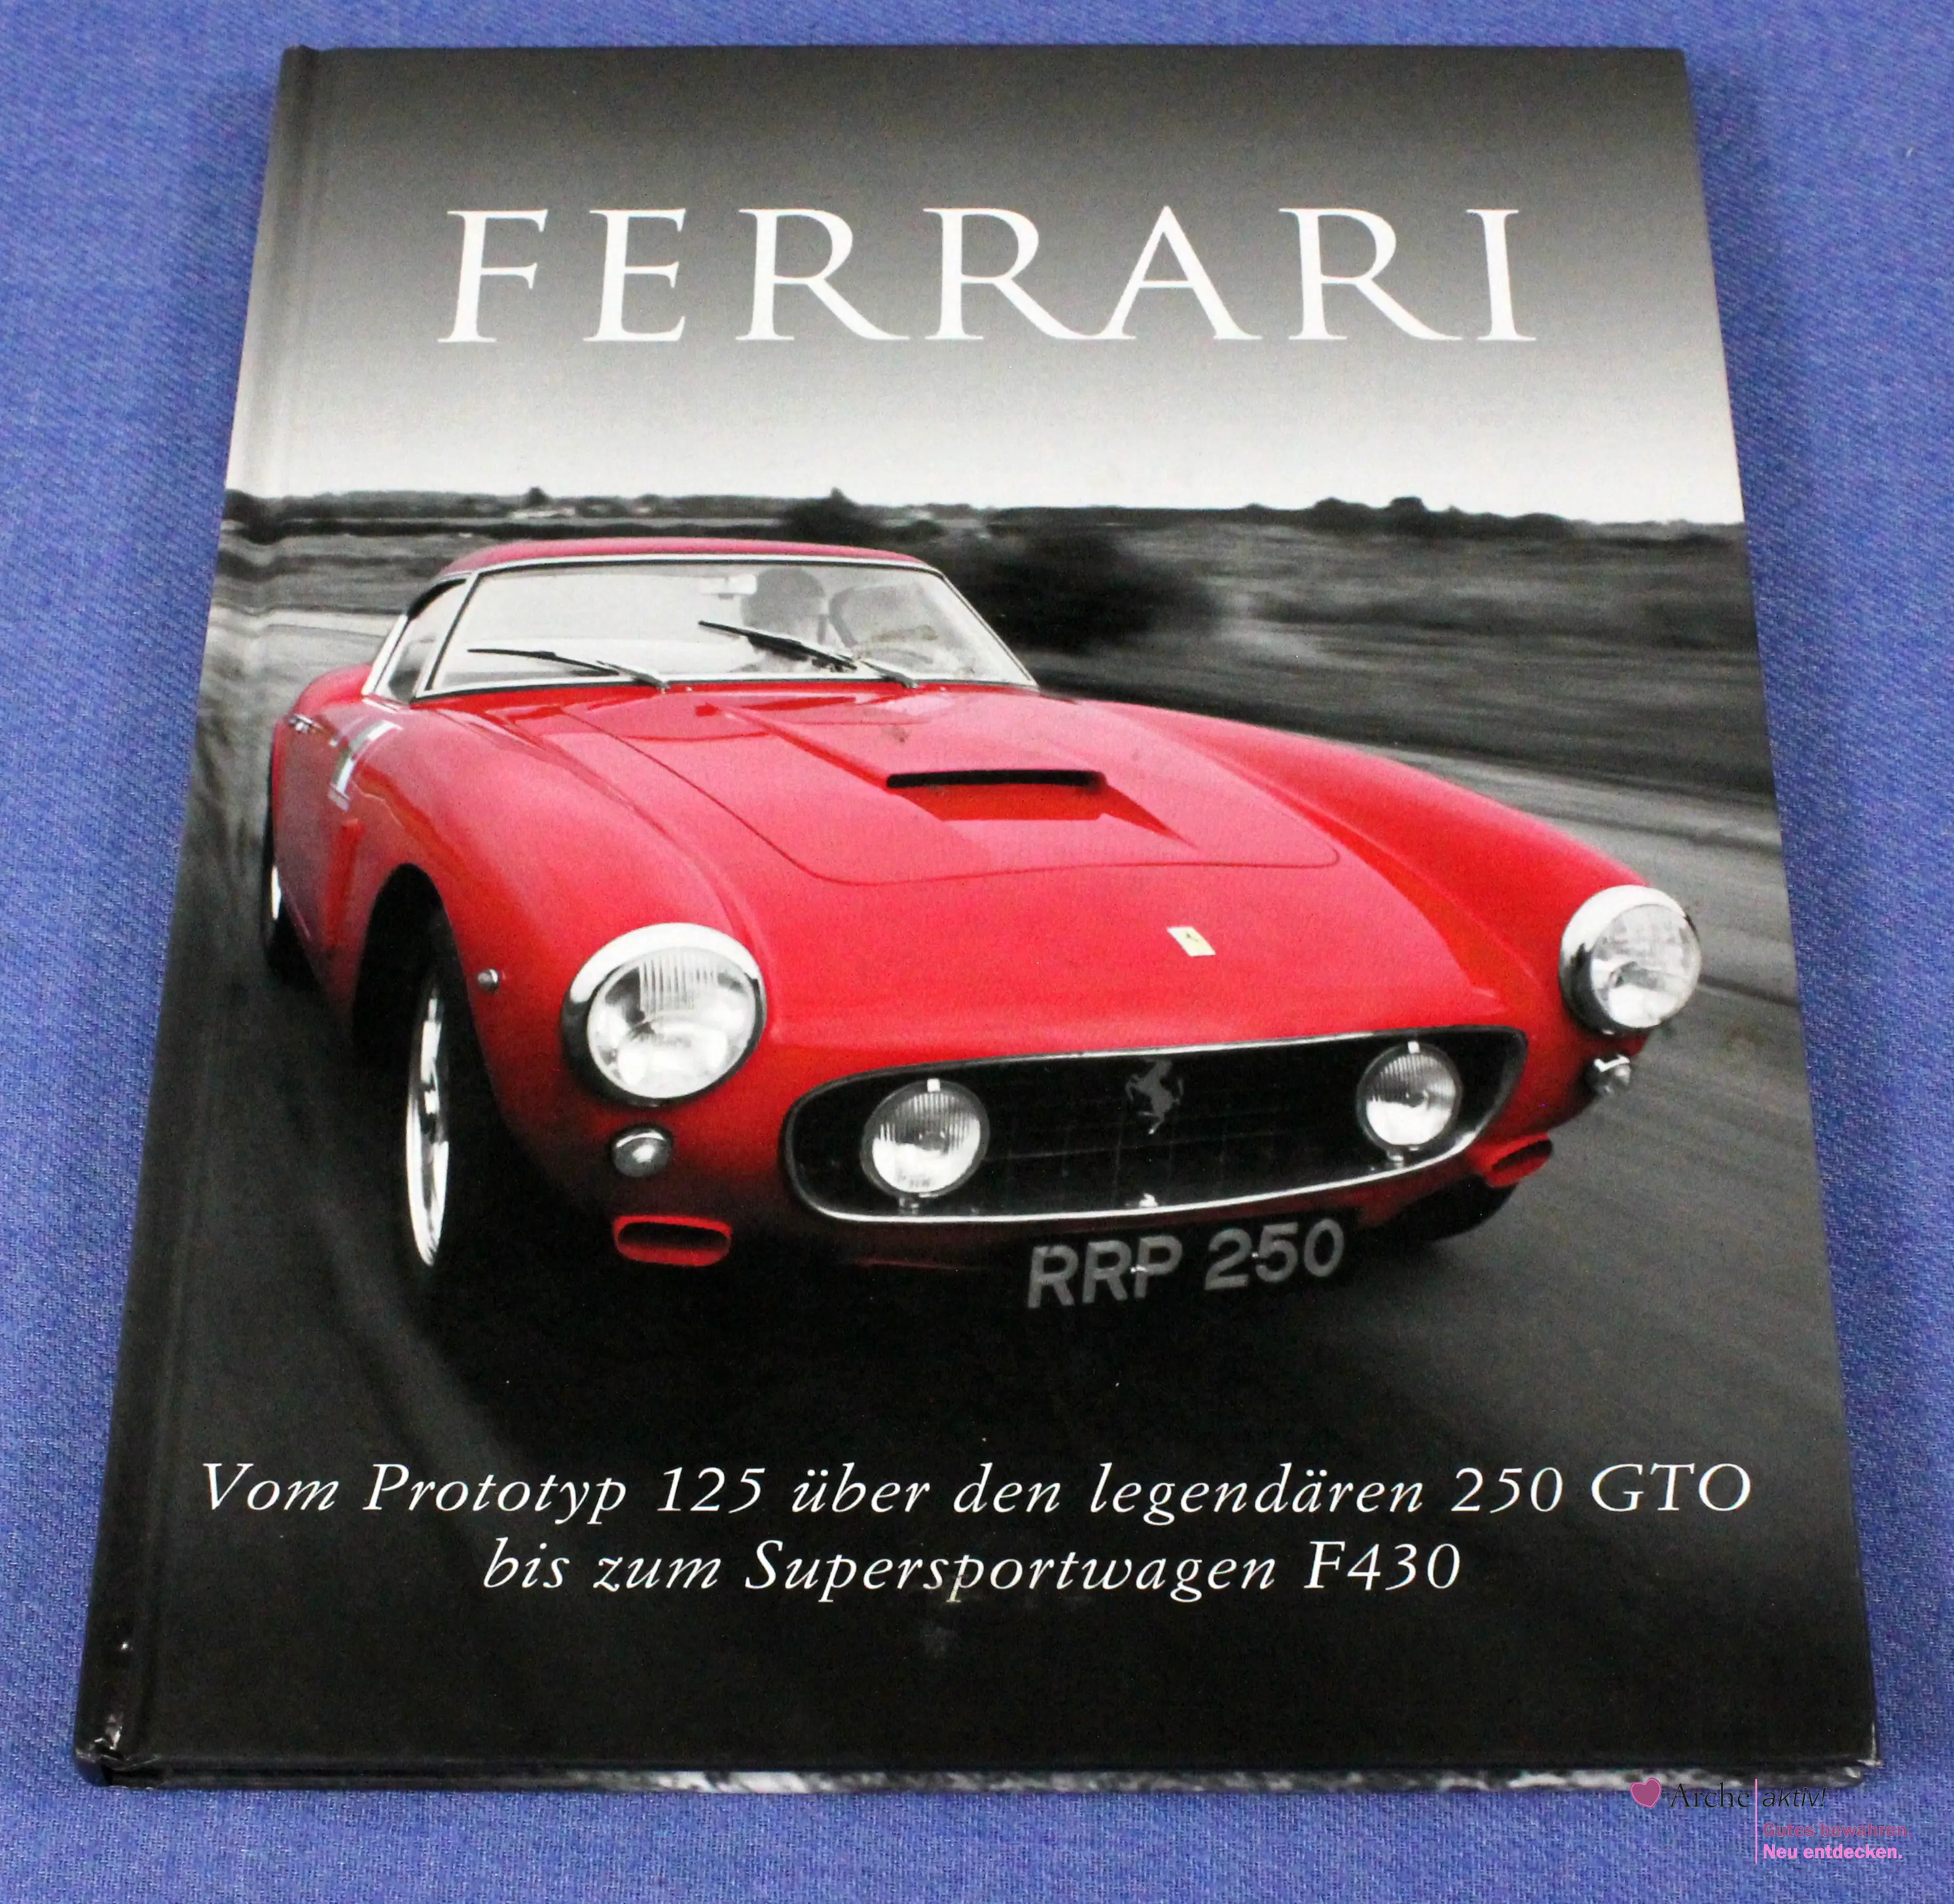 Ferrari - Vom Prototyp 125 über den legendären 250 GTO ..., gebraucht